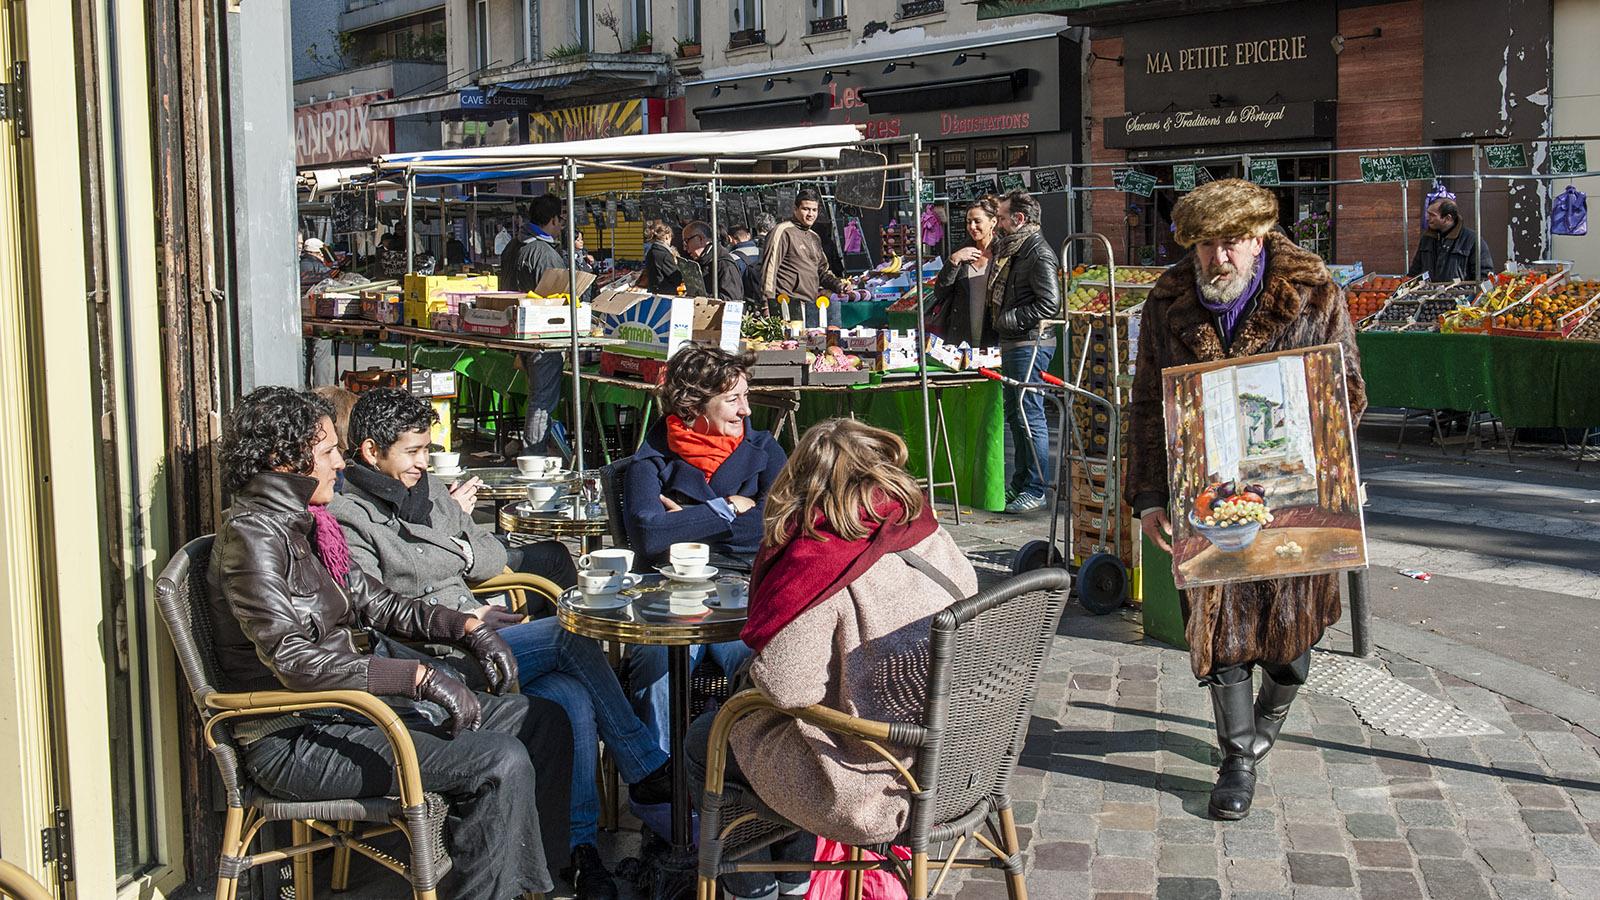 Märkte: An der Place d'Aligre preist ein Maler seine Kunst den Café-Gästen an. Foto: Hilke Maunder